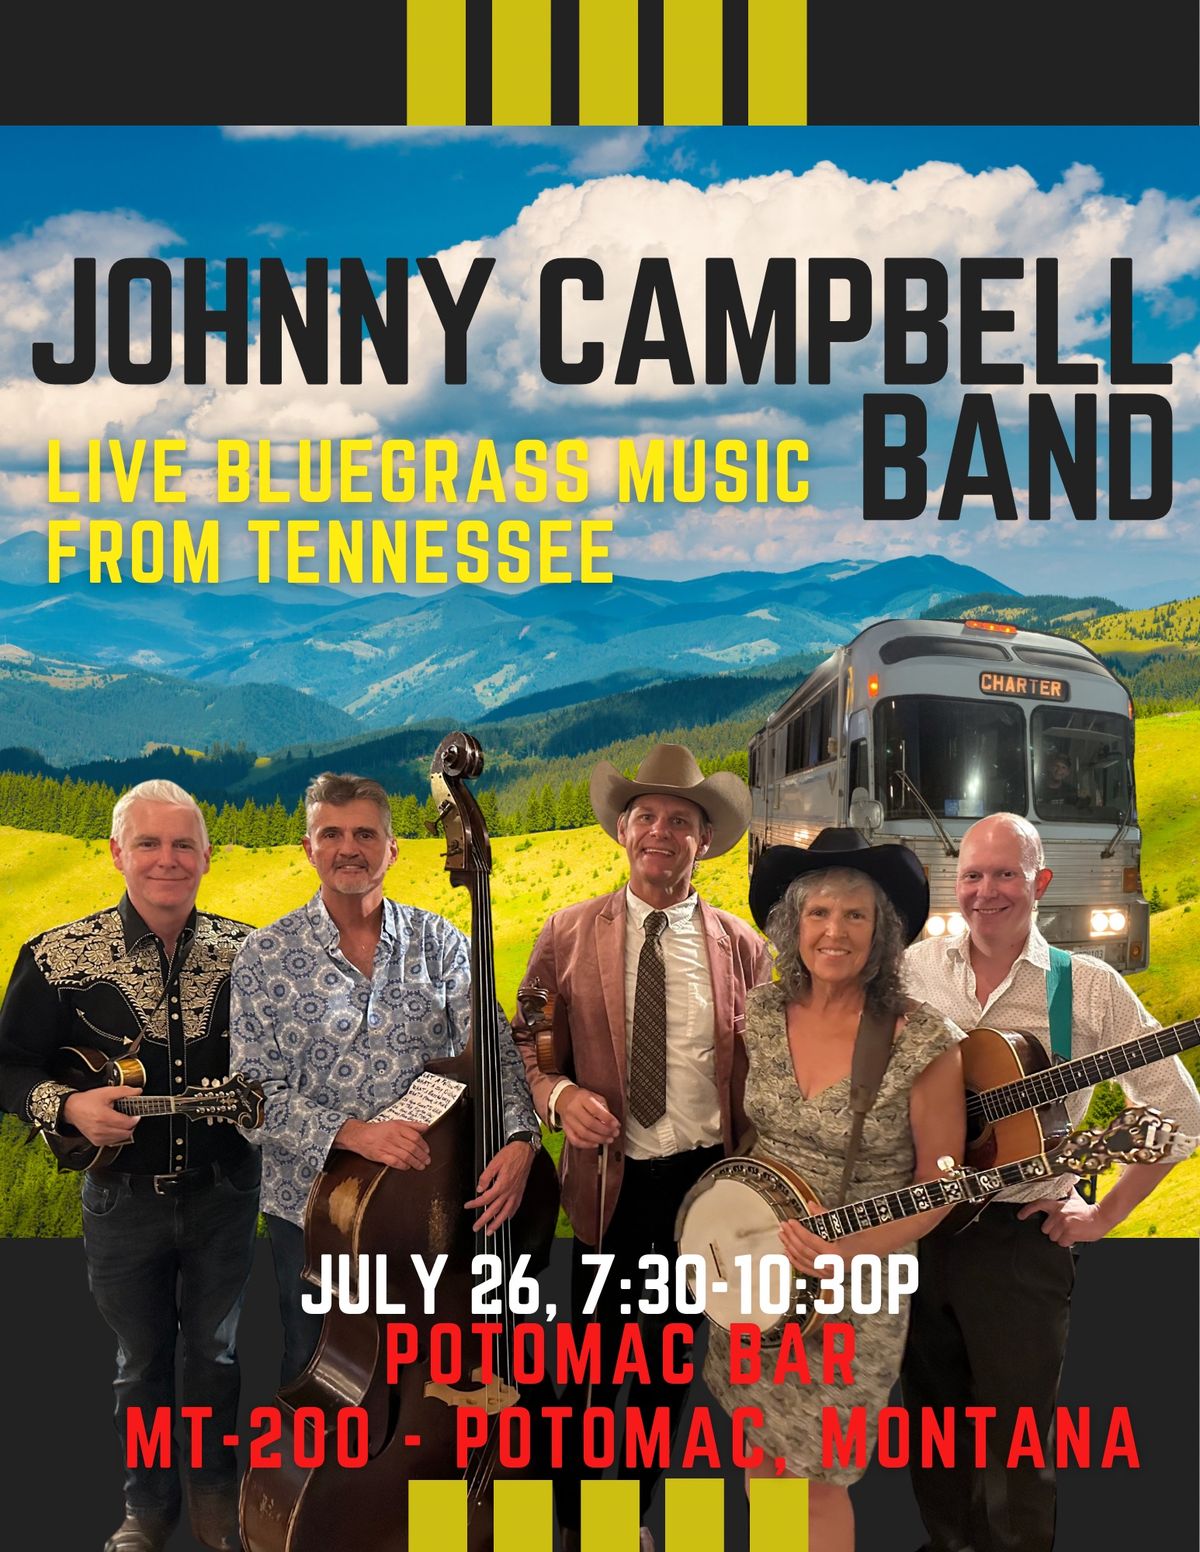 Johnny Campbell Band at Potomac Bar